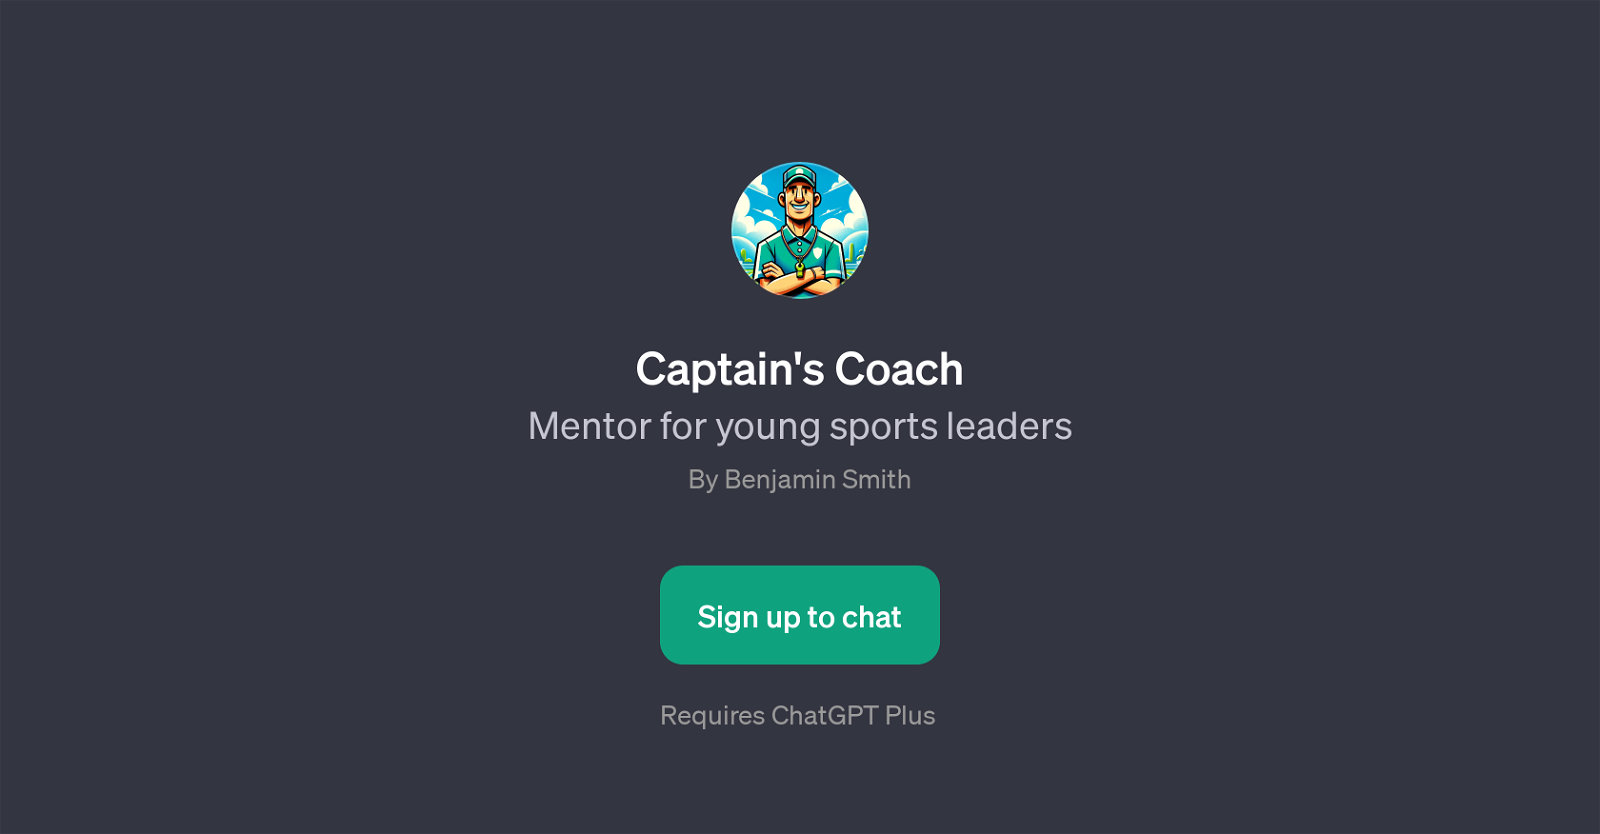 Captain's Coach website